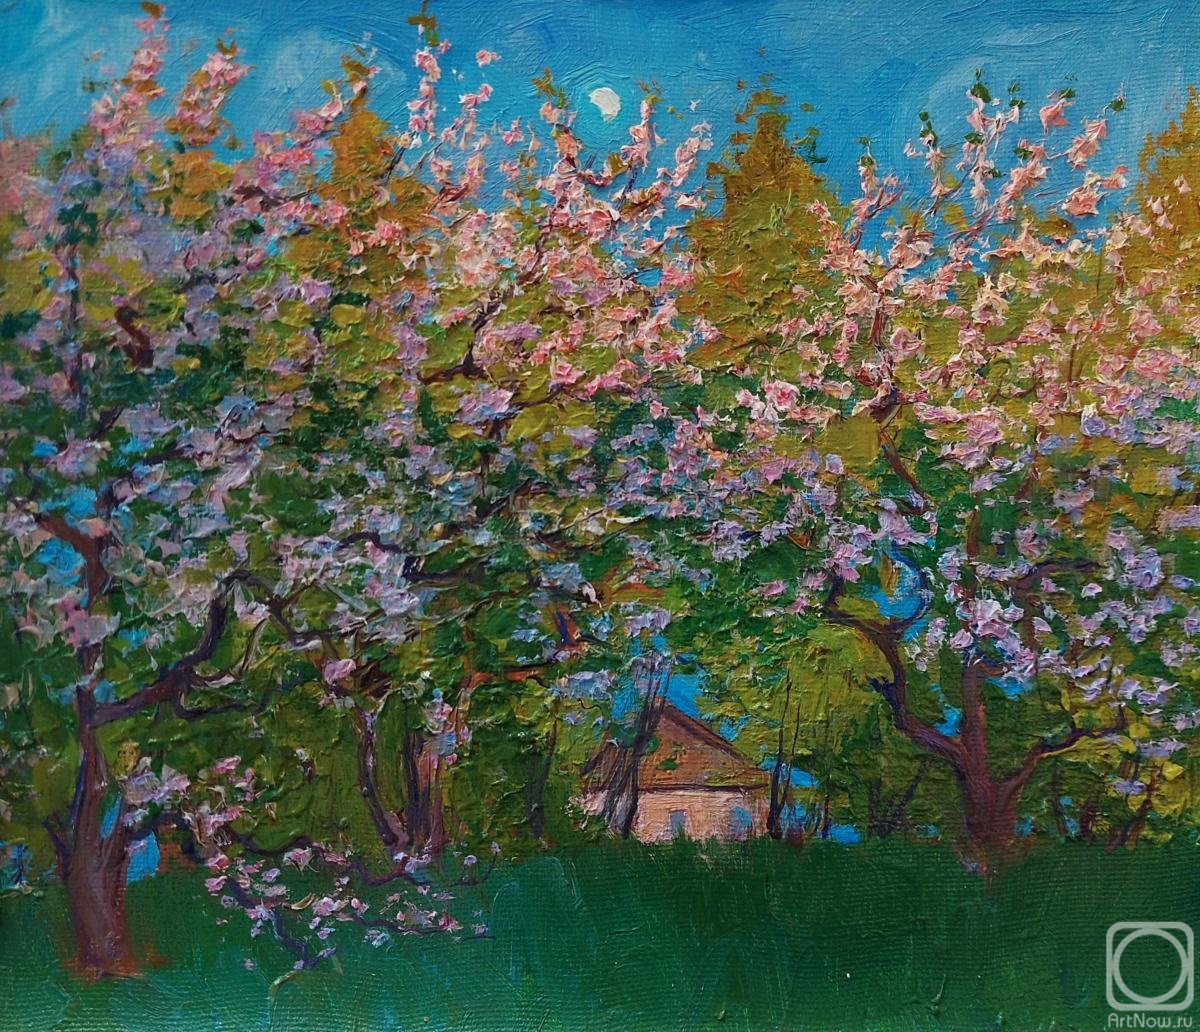 Melnikov Aleksandr. Evening in the blooming garden